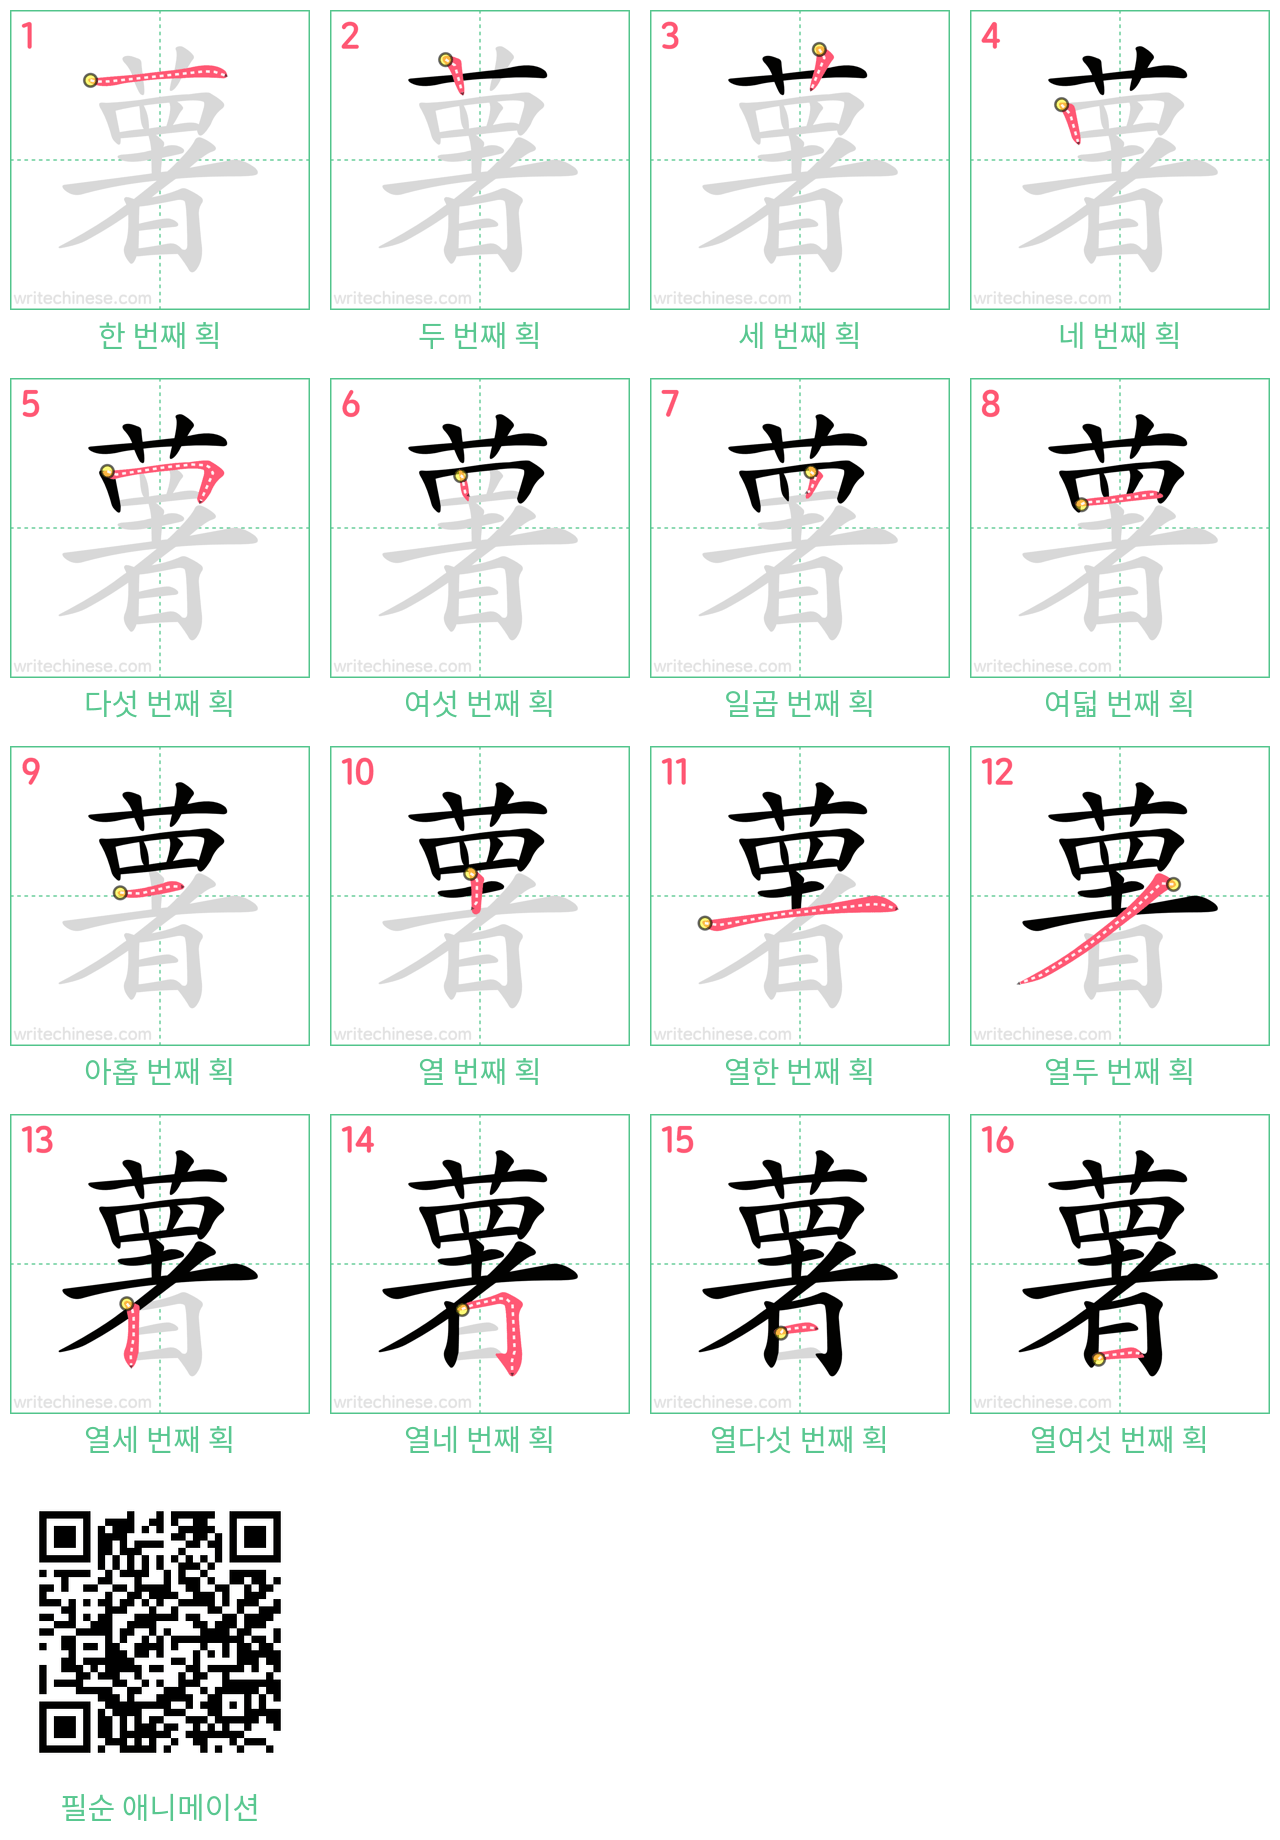 薯 step-by-step stroke order diagrams